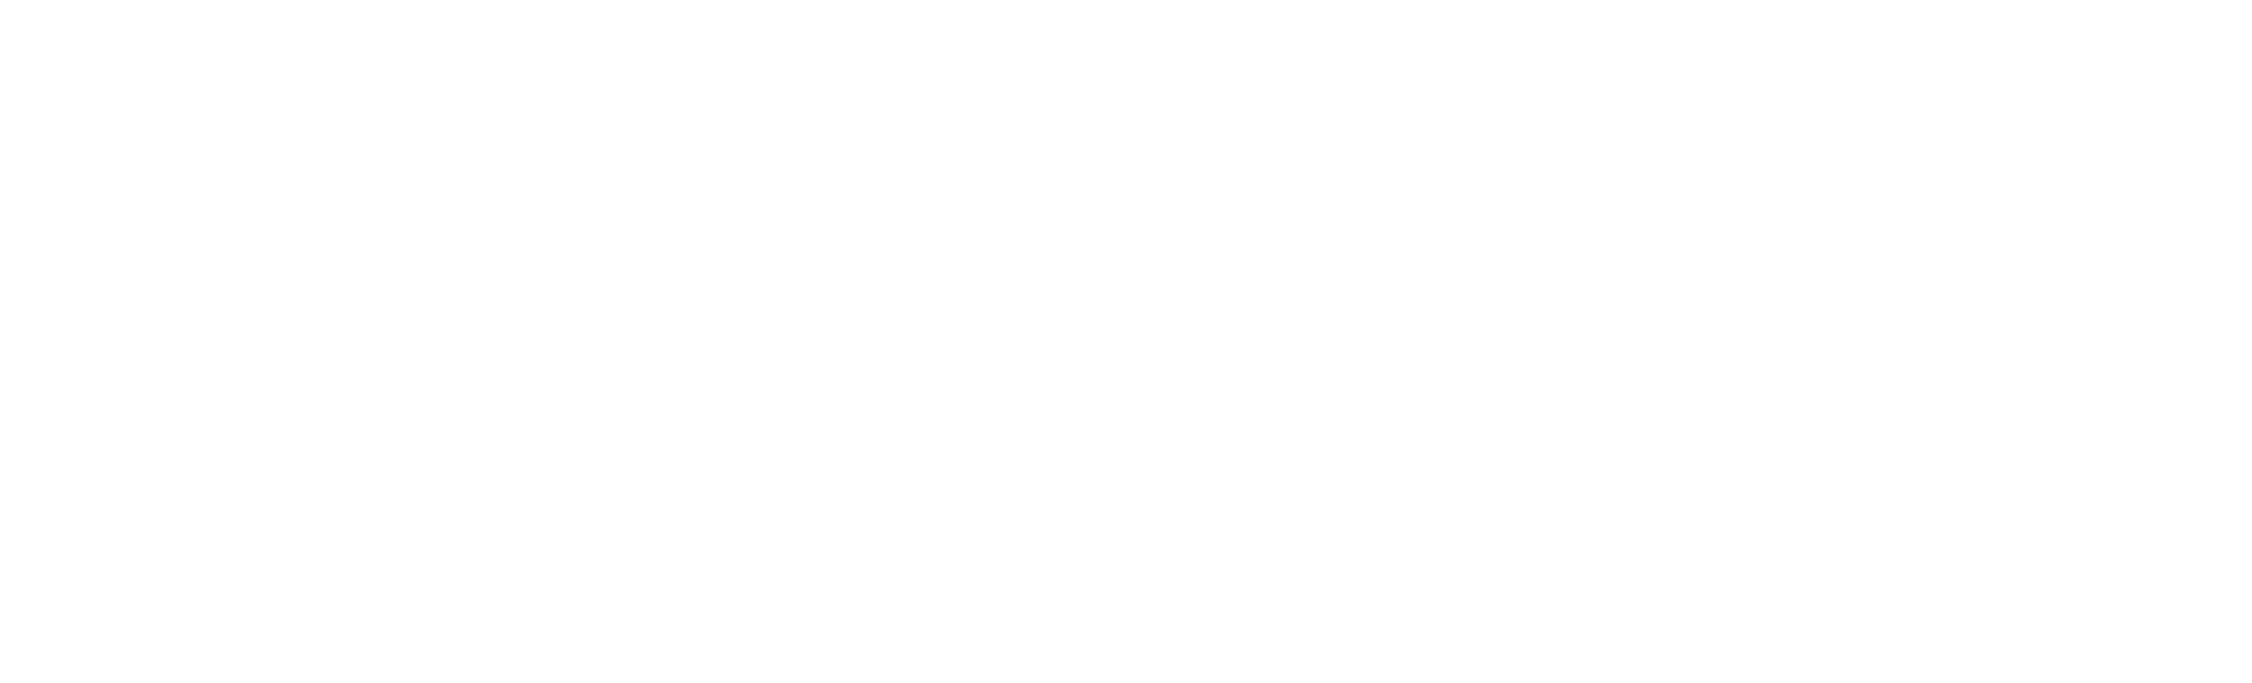 Soltech- logo wit zonder baseline